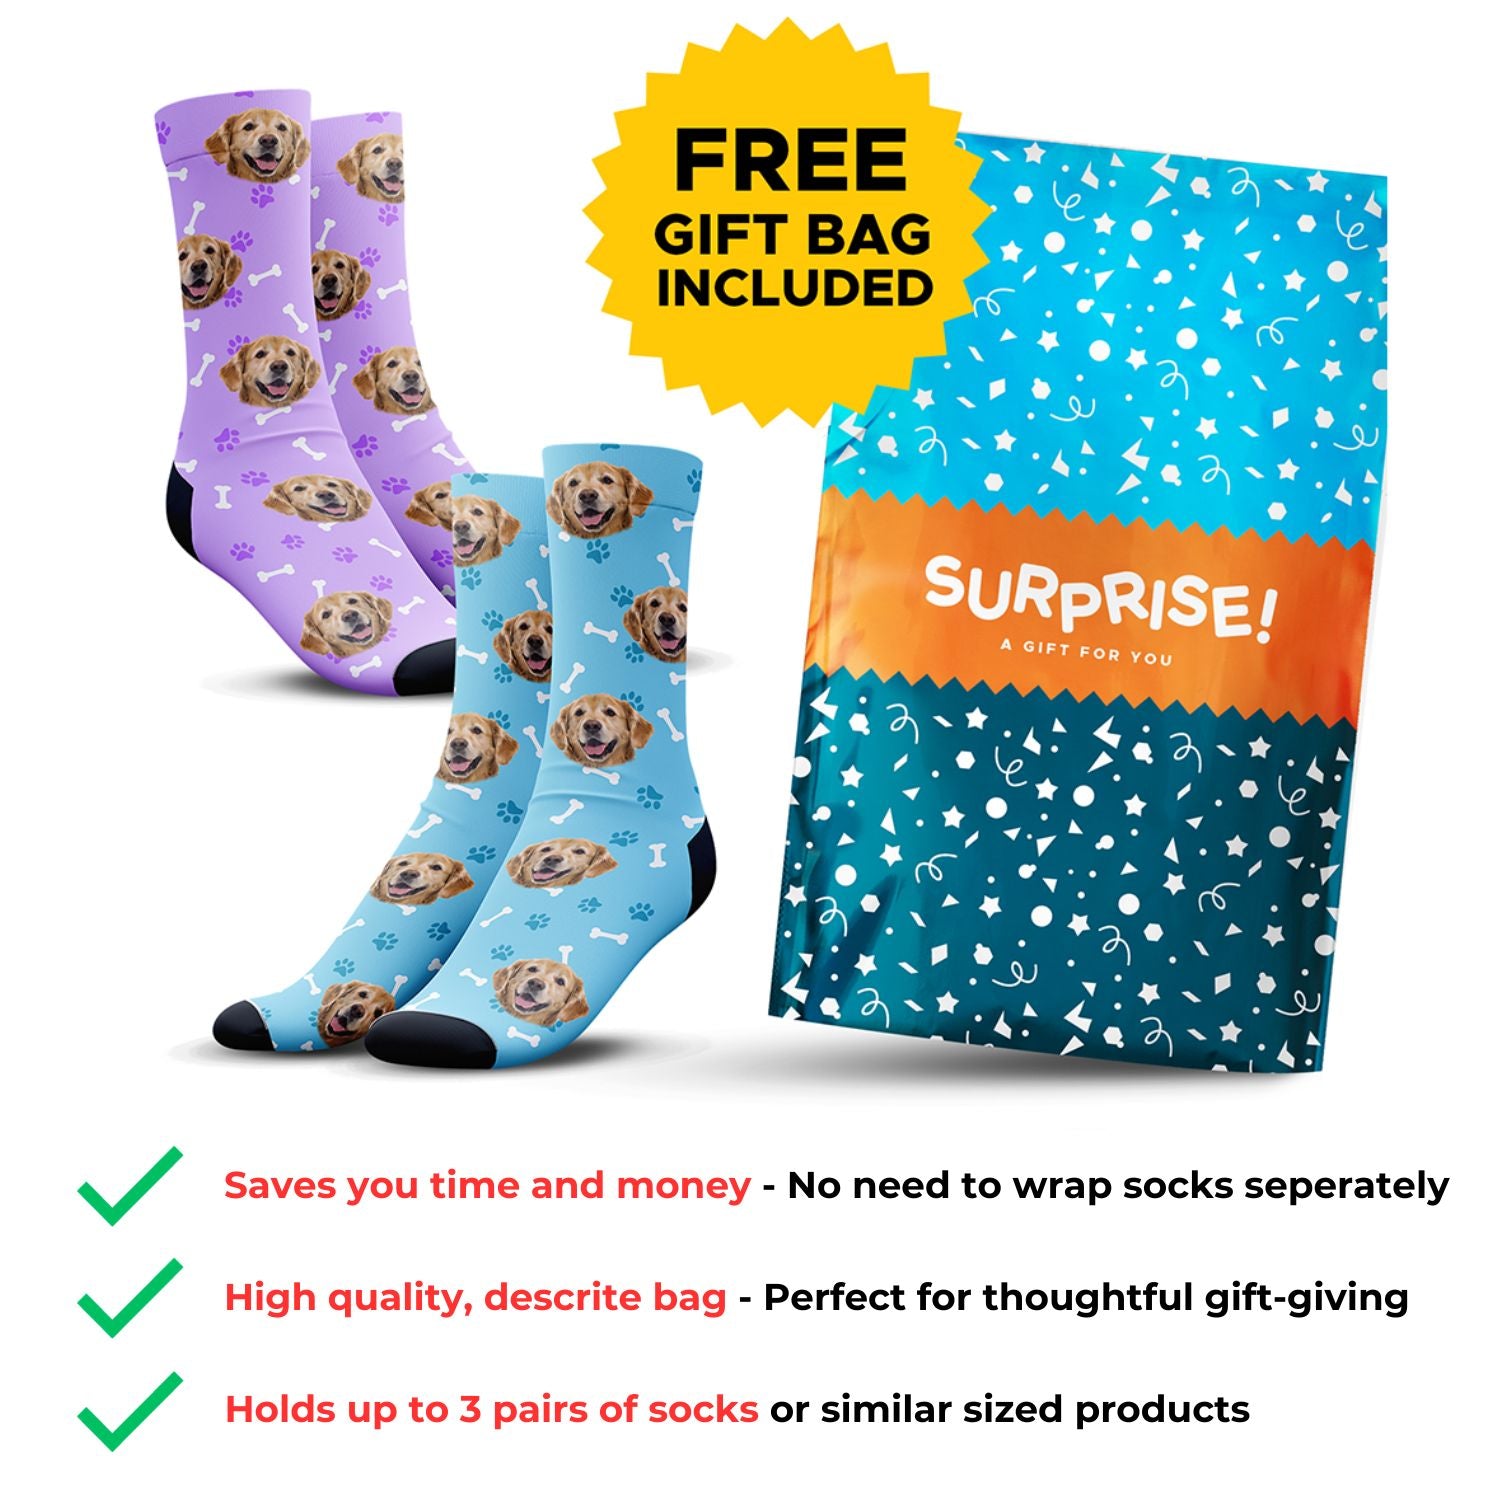 Custom Flannel Socks - 100% Free, Limit 1 Per Customer